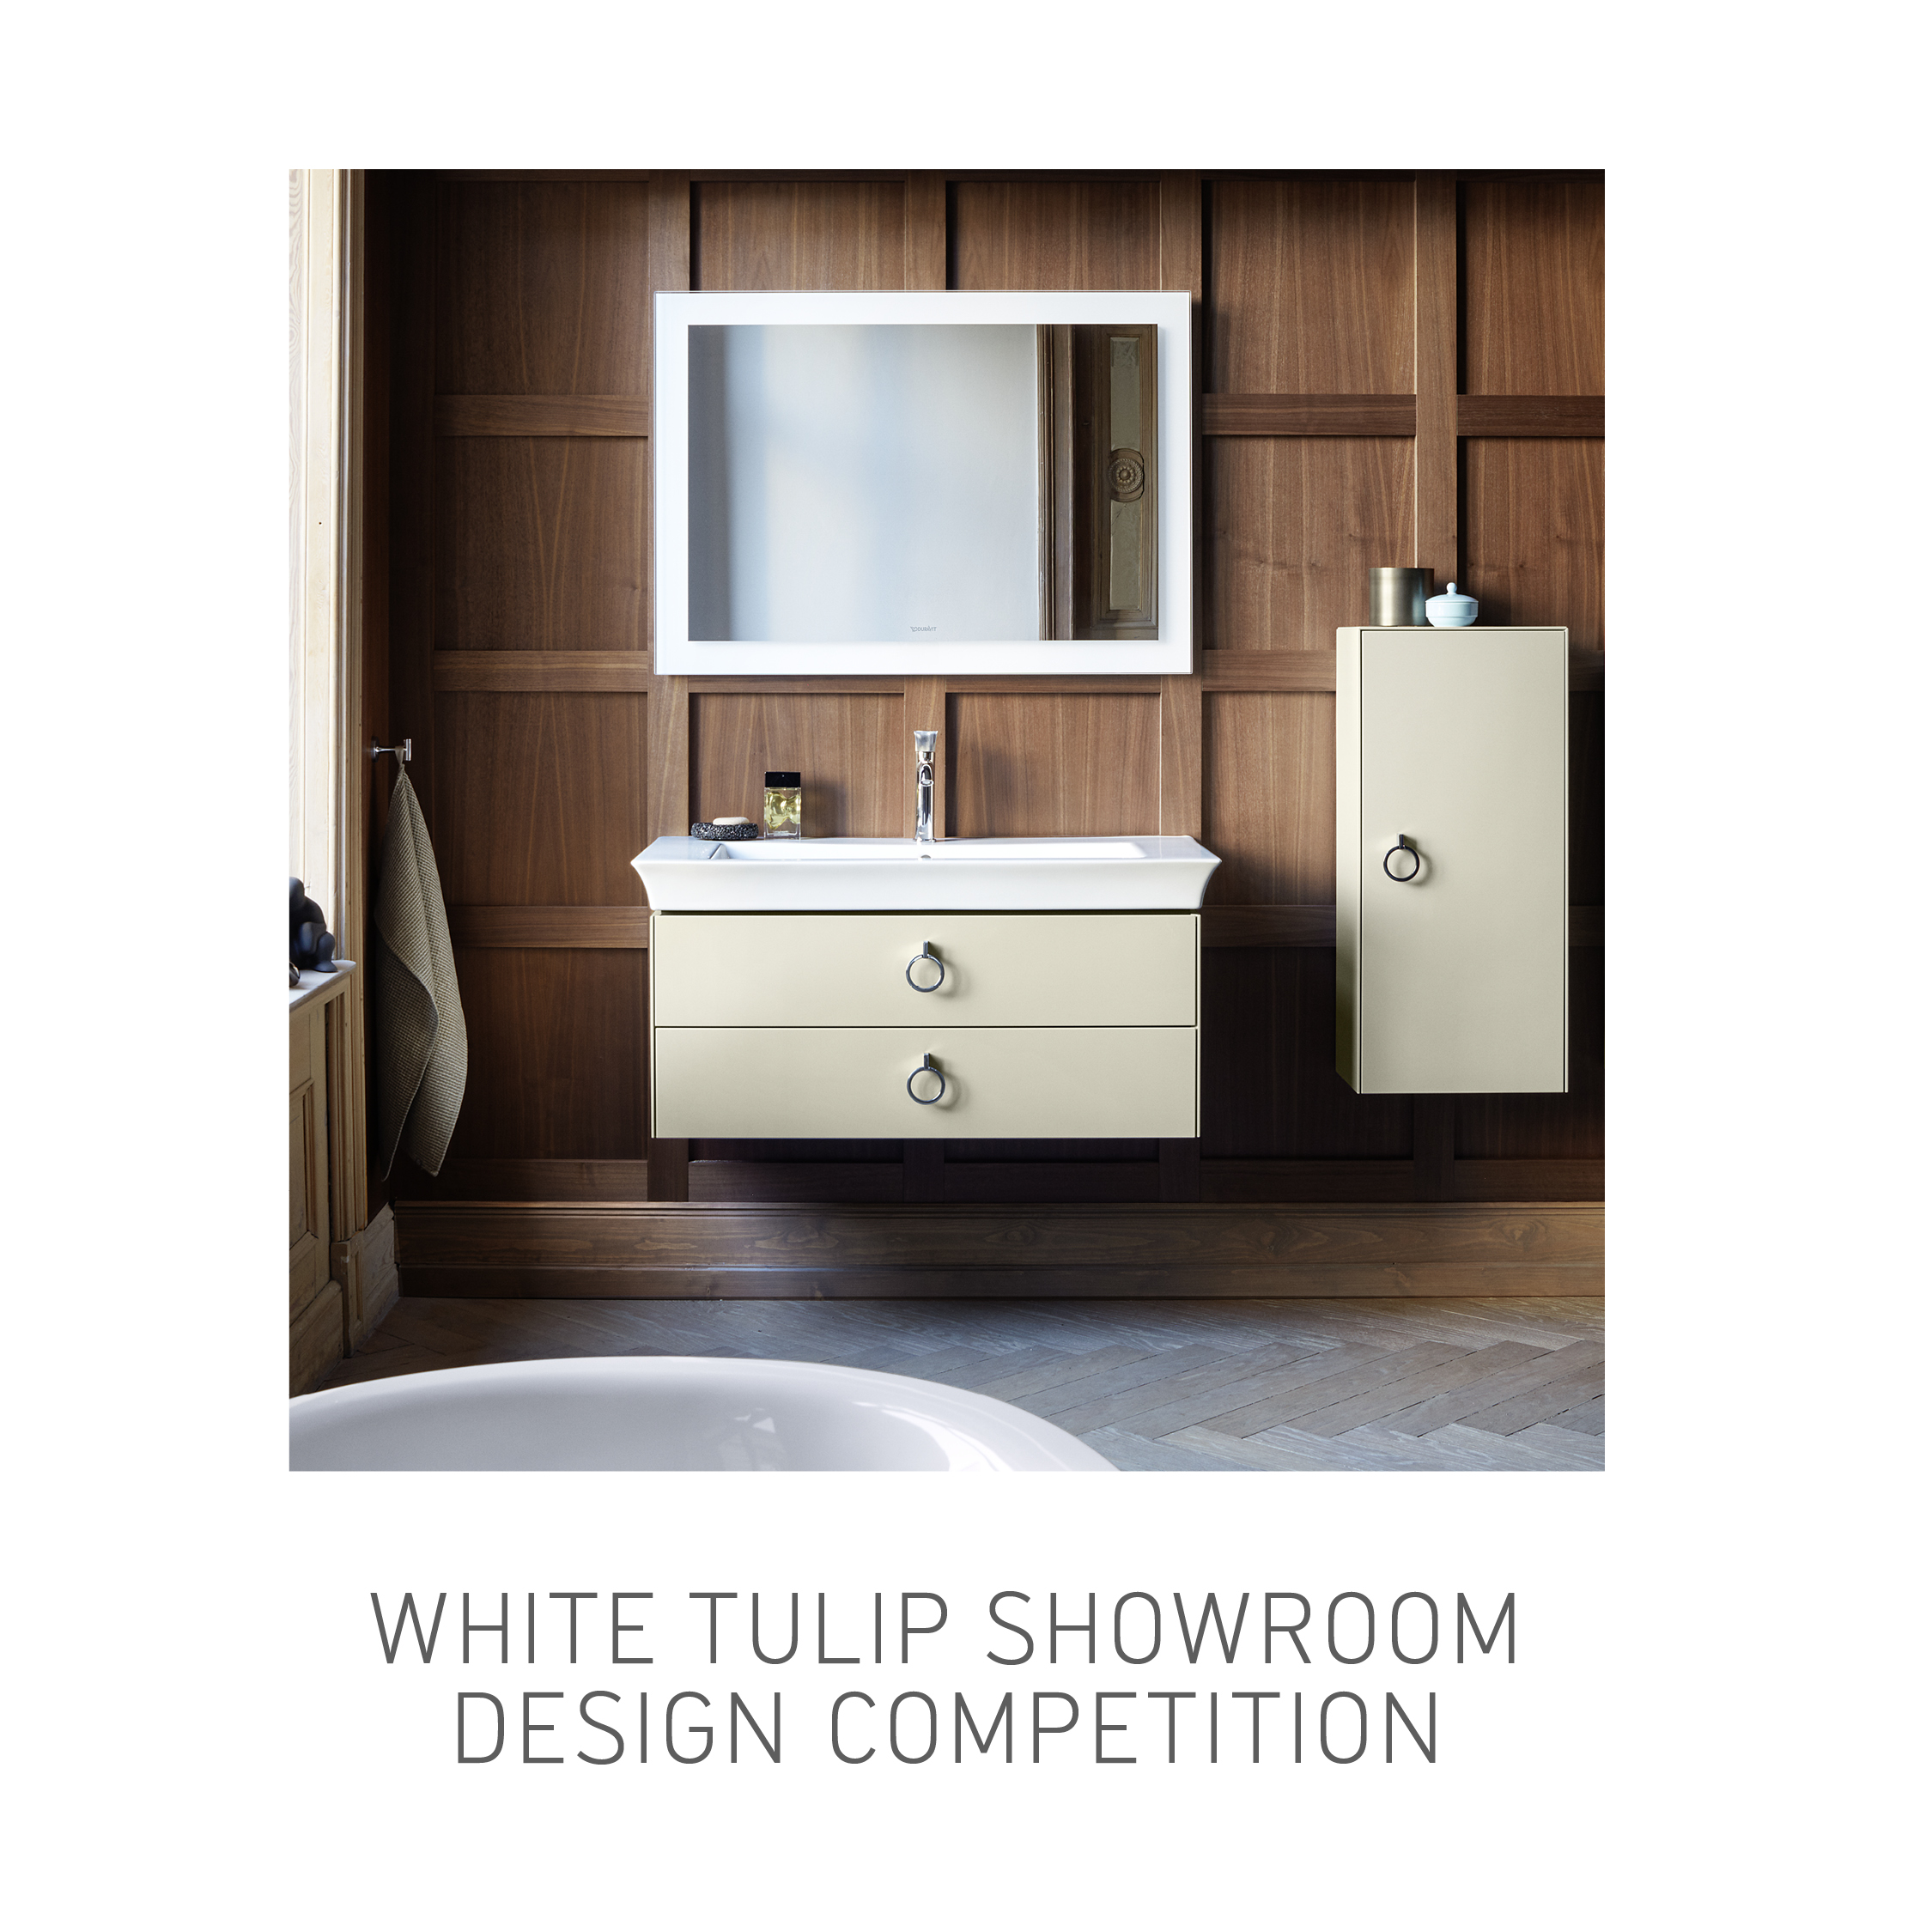 Duravit launches White Tulip Interior Design Competition @Duravit